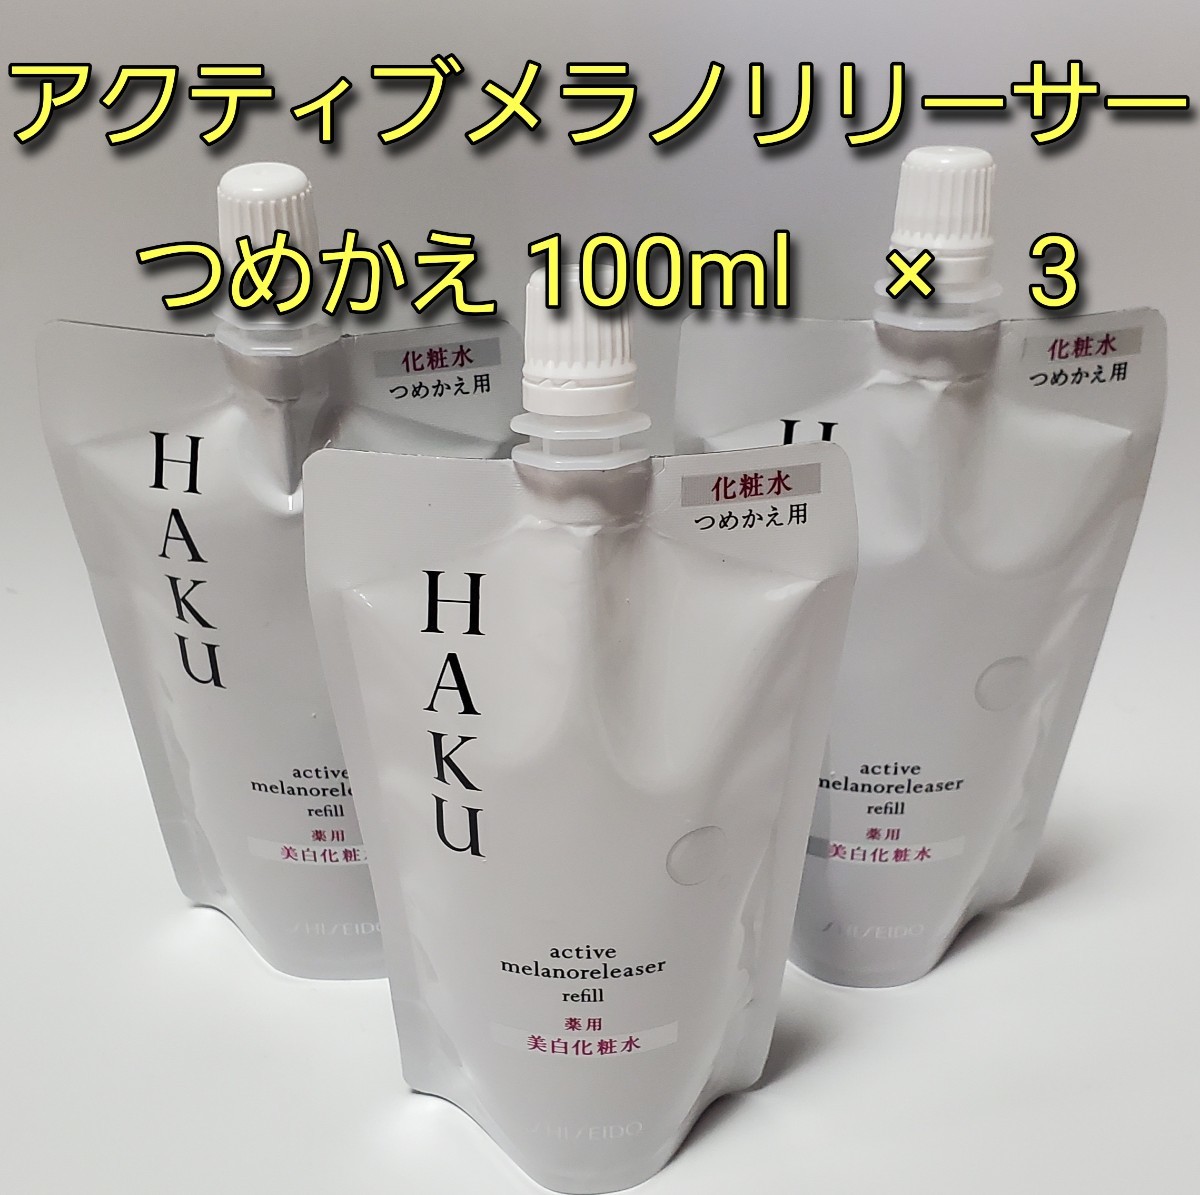 ホワイト系値引きする【最終1セット】資生堂HAKU 美白化粧水アクティブ 